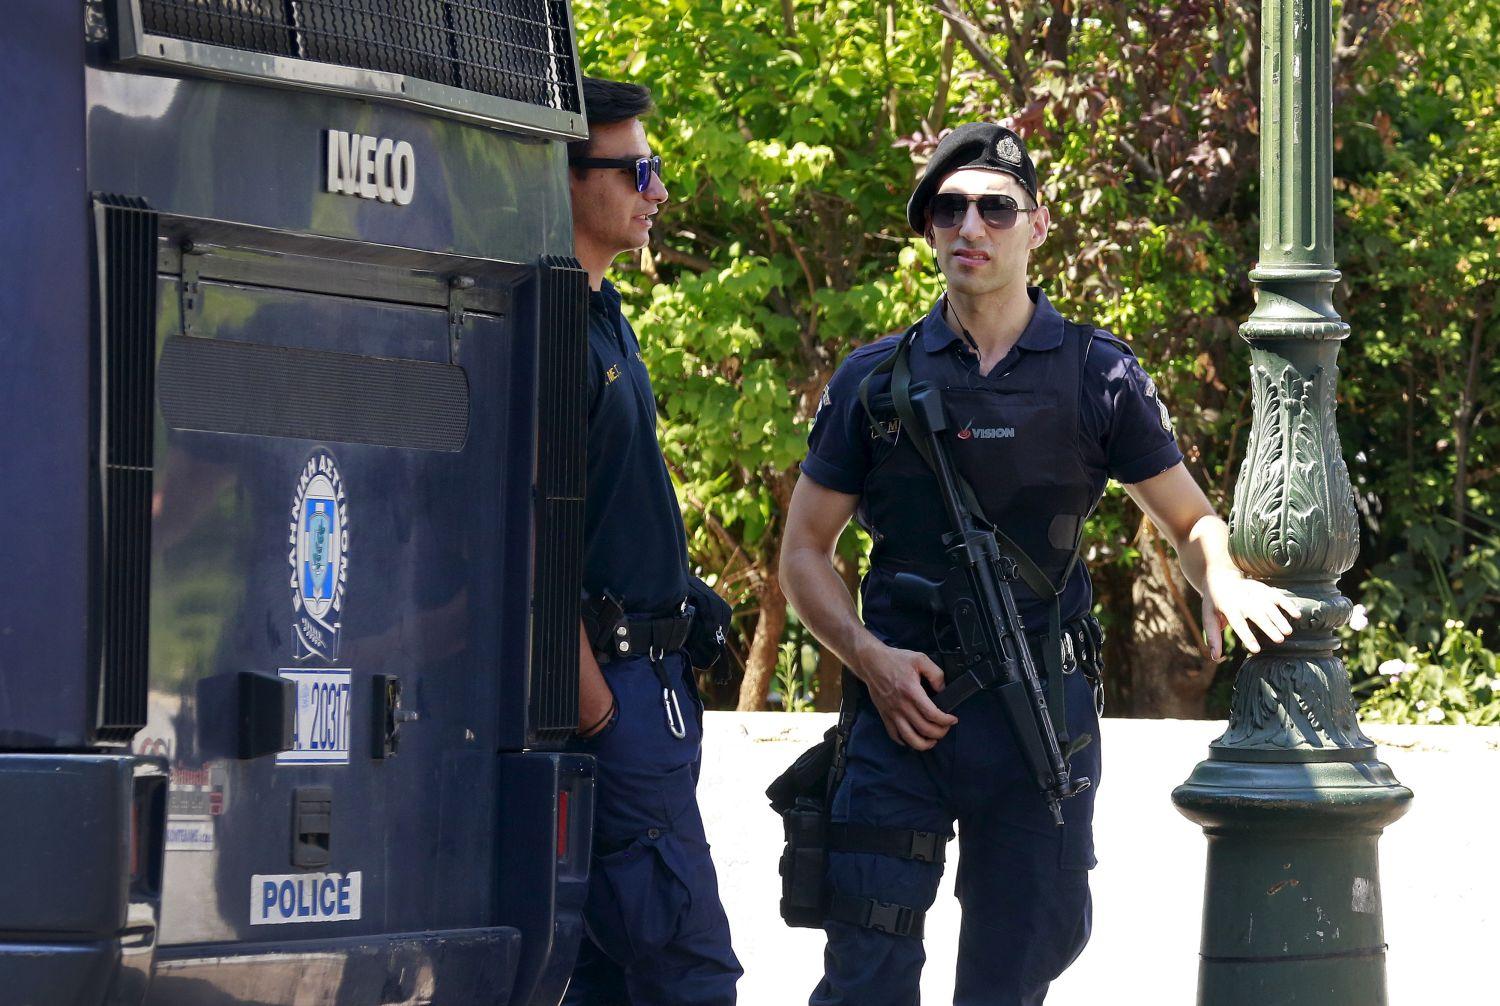 Rendőrök őrzik az athéni Nemzeti Bankot - tartanak a rohamtól